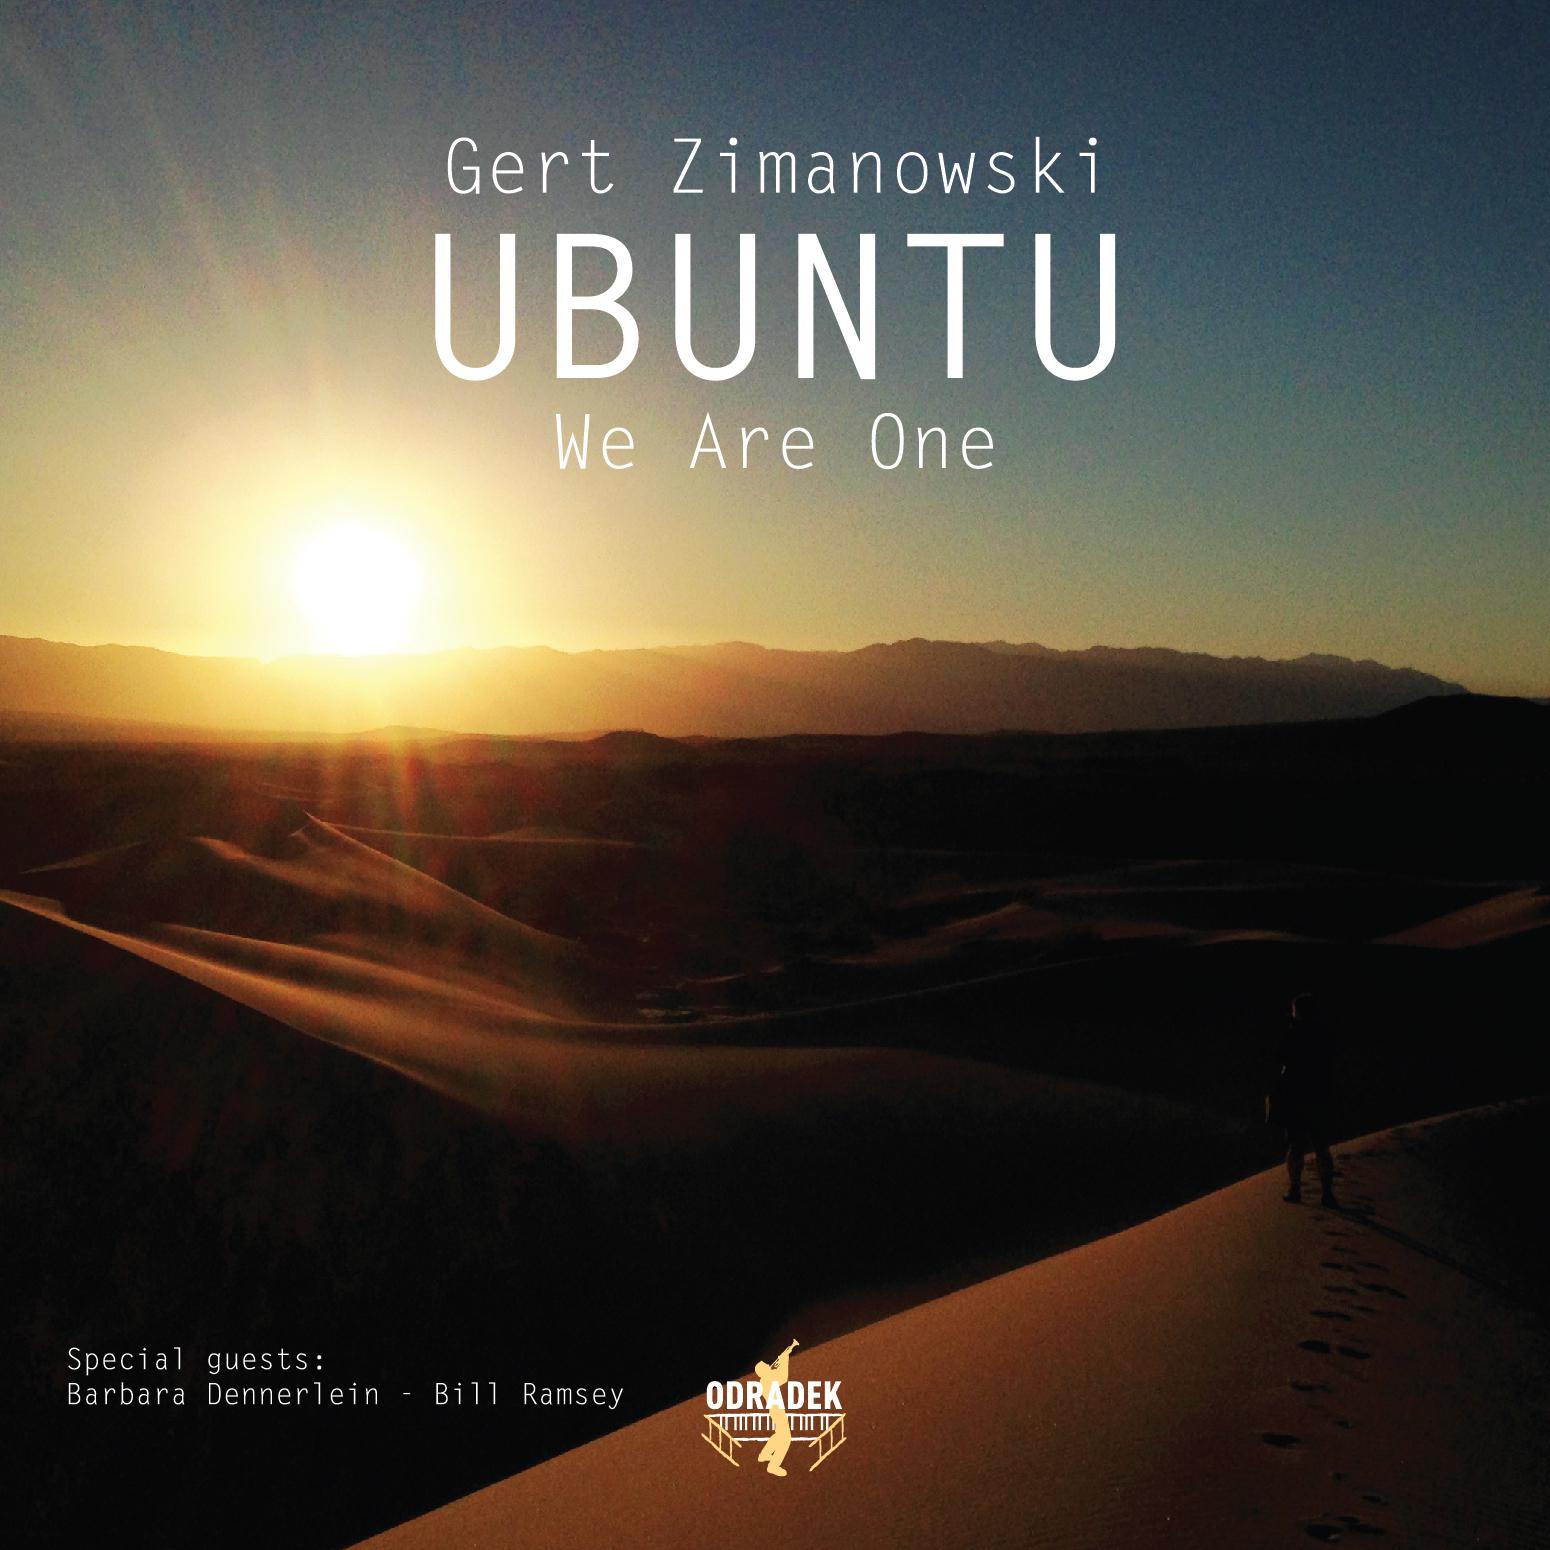 Gert Zimanowski - Live on Mars